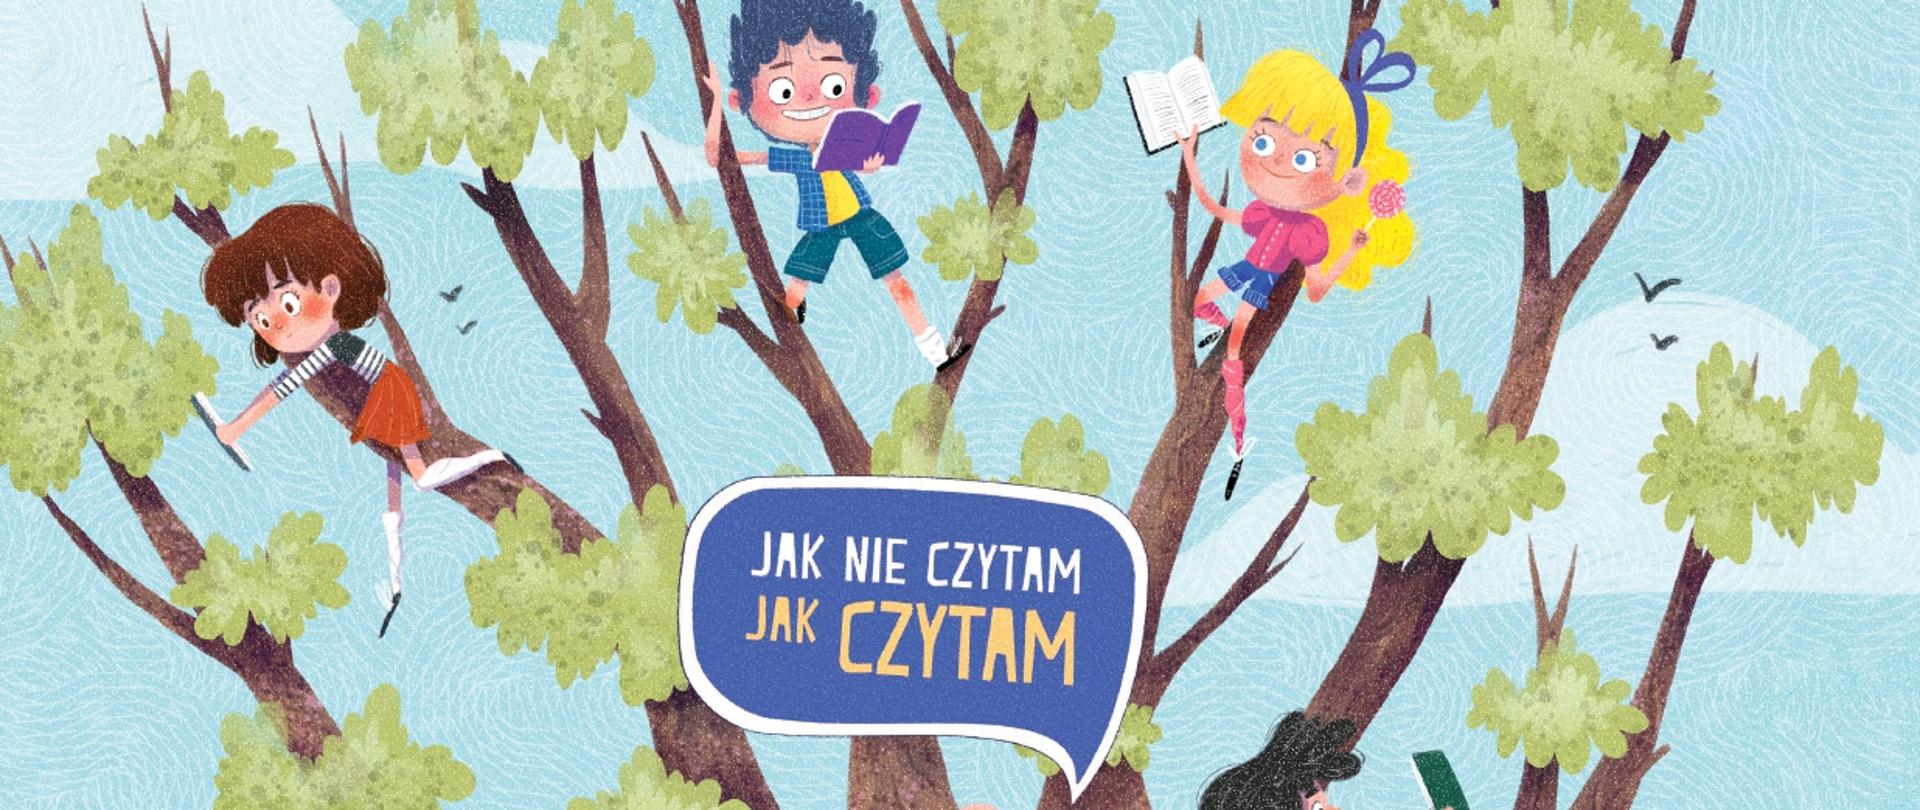 Plakat przedstawiający drzewo na które wspinają się uśmiechnięte dzieci trzymające w rękach książki